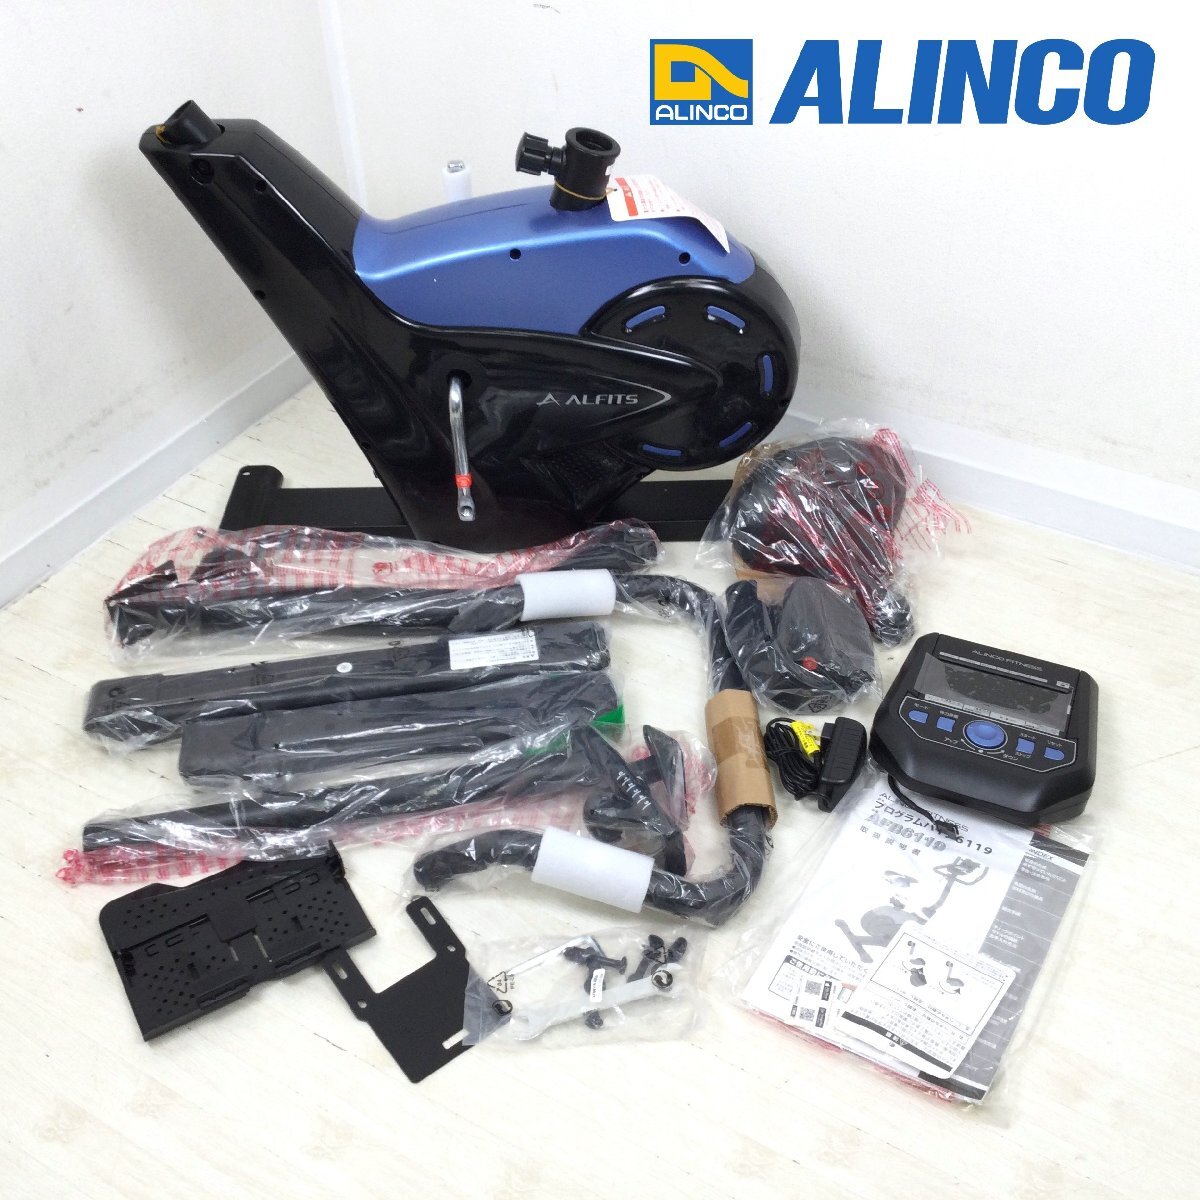 1204【未使用品】 ALINCO アルインコ ALFITS AFB6119 プログラムバイク 6119 フィットネスバイク エアロバイク エクササイズ用品の画像1